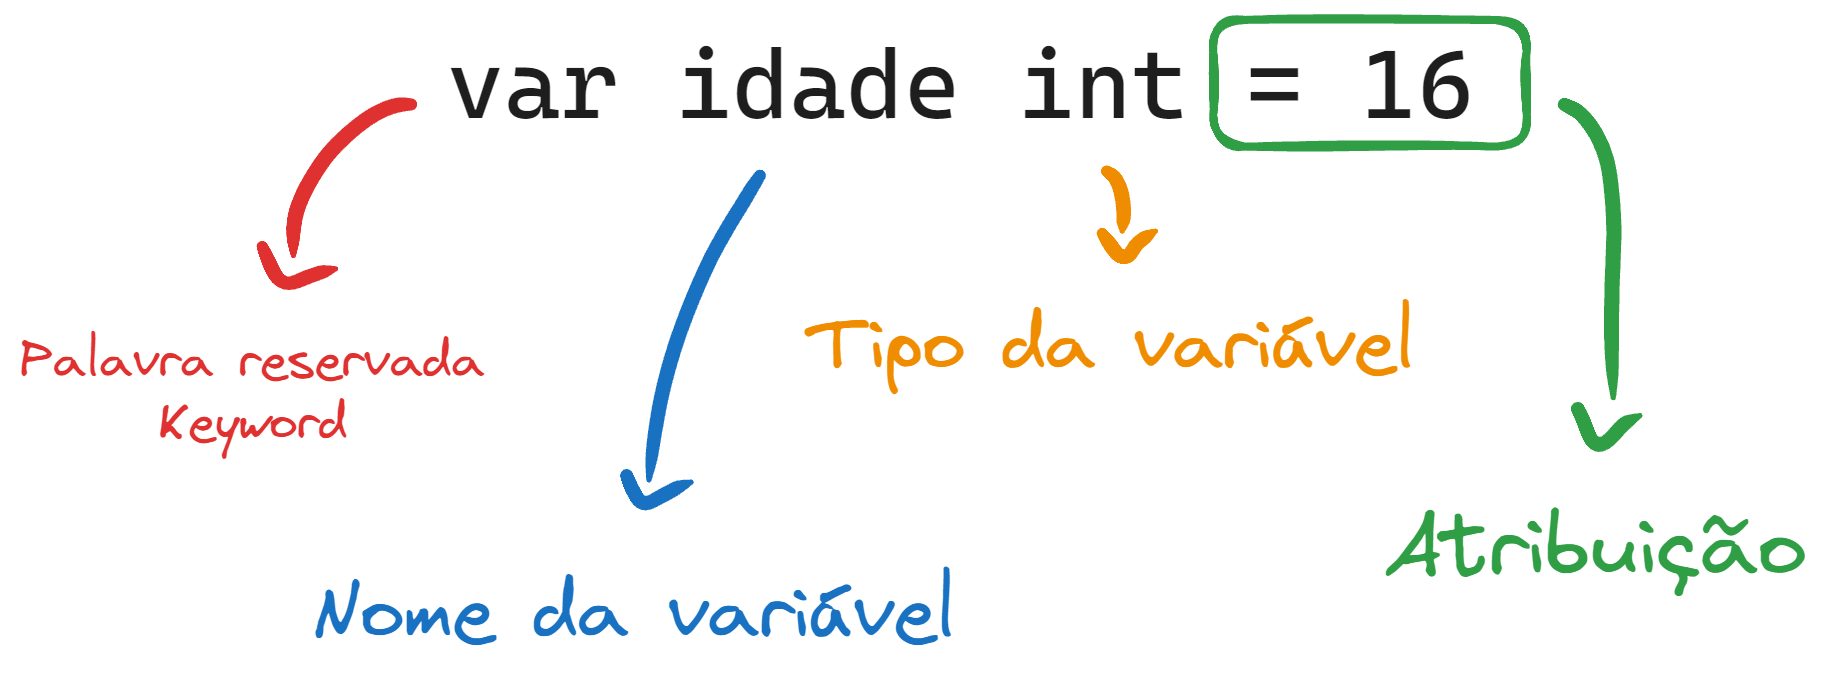 Demonstração da estrutura de uma variável com setas e cores. 'var' -> palavra reservada. 'idade' -> nome da variável. 'int' -> tipo da variável. '= 16' -> atribuição.